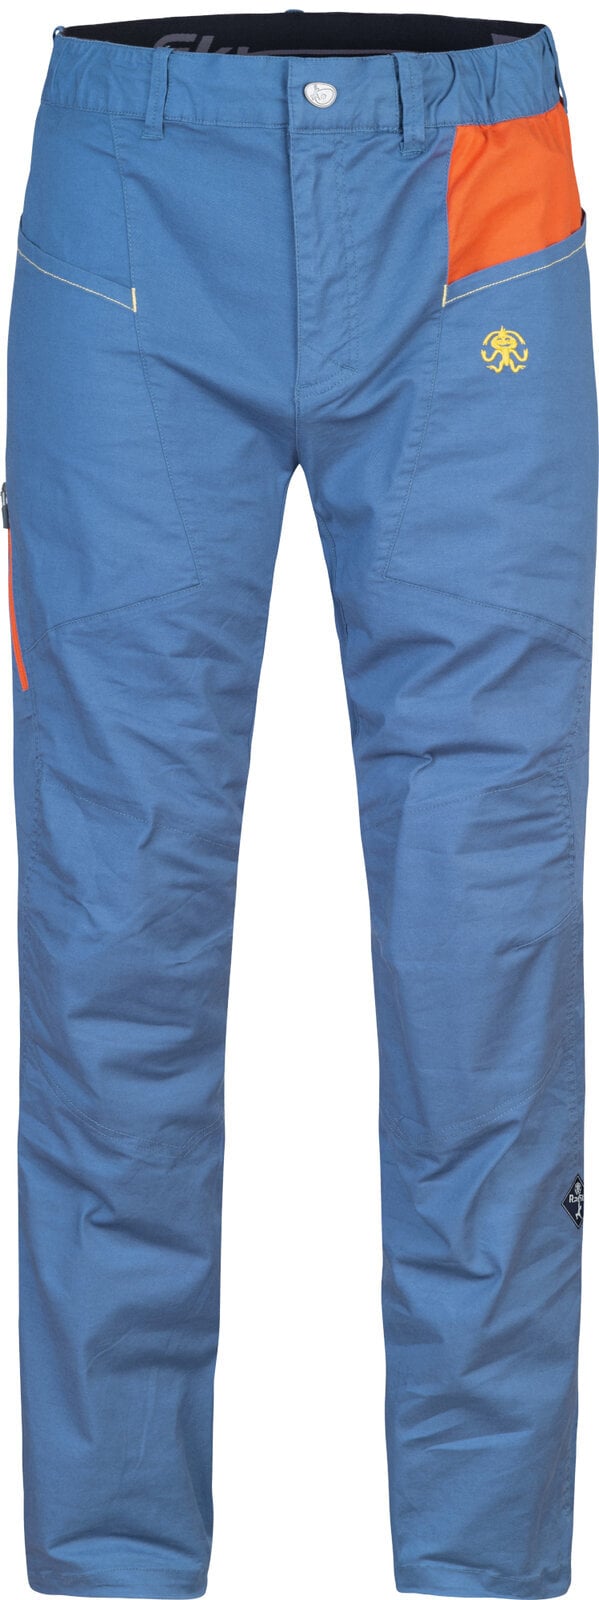 Pantalons outdoor Rafiki Crag Man Pants Ensign Blue/Clay M Pantalons outdoor